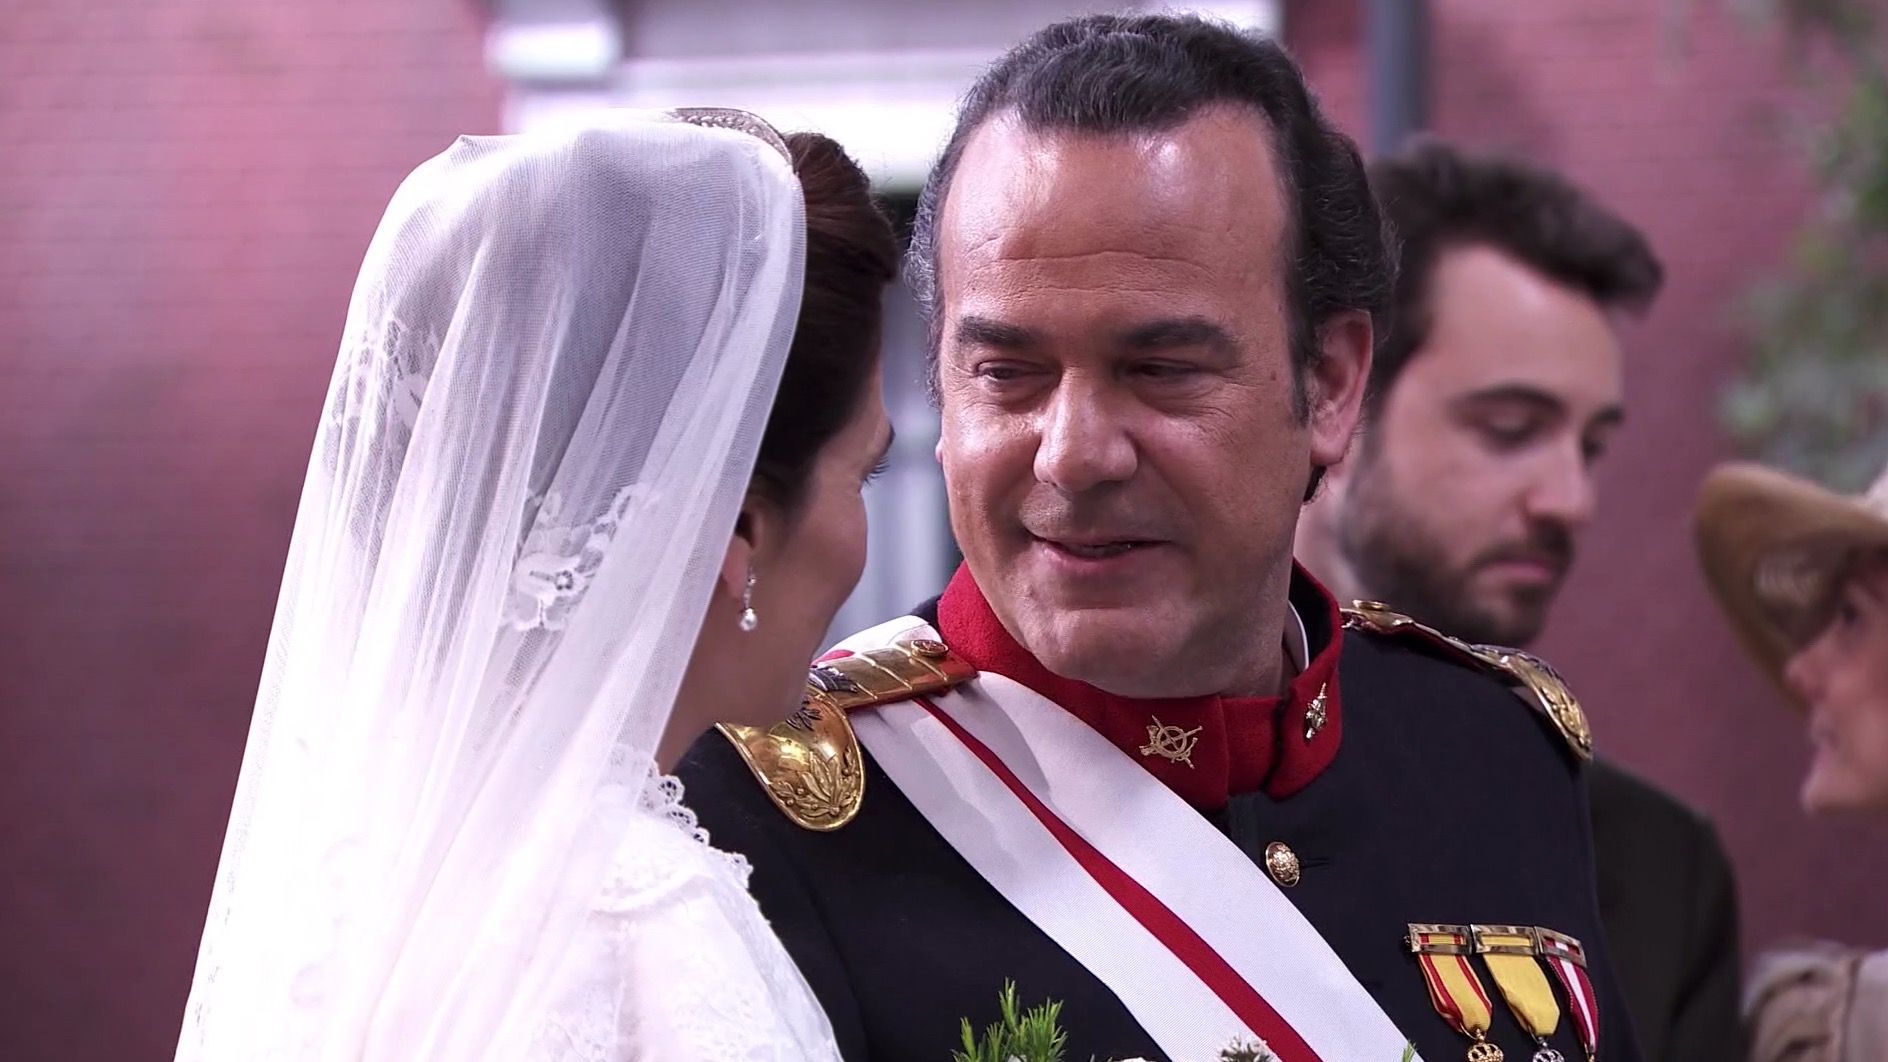 Una Vita: il matrimonio di Silvia ed il colonnello Valverde